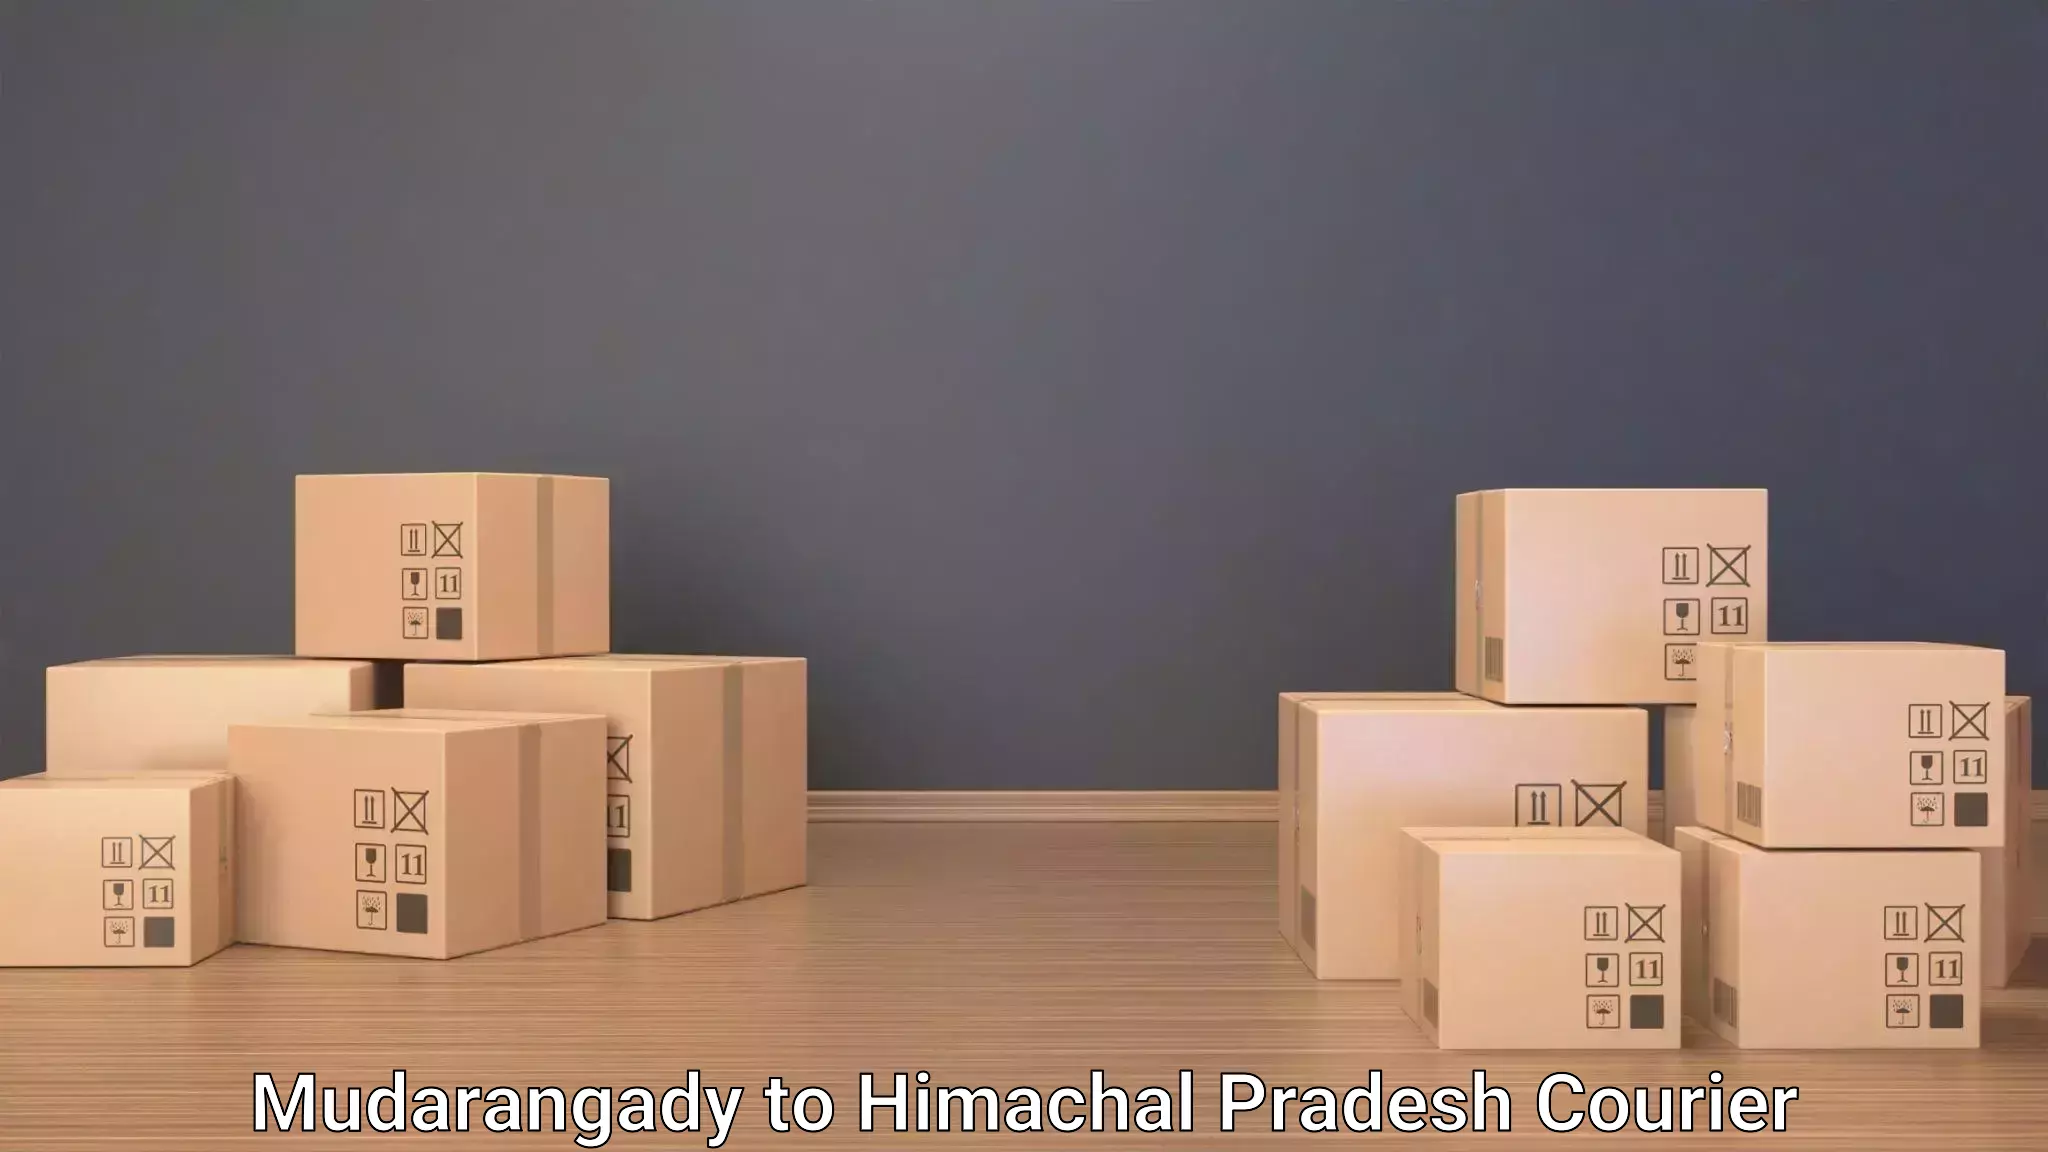 Baggage relocation service Mudarangady to Una Himachal Pradesh